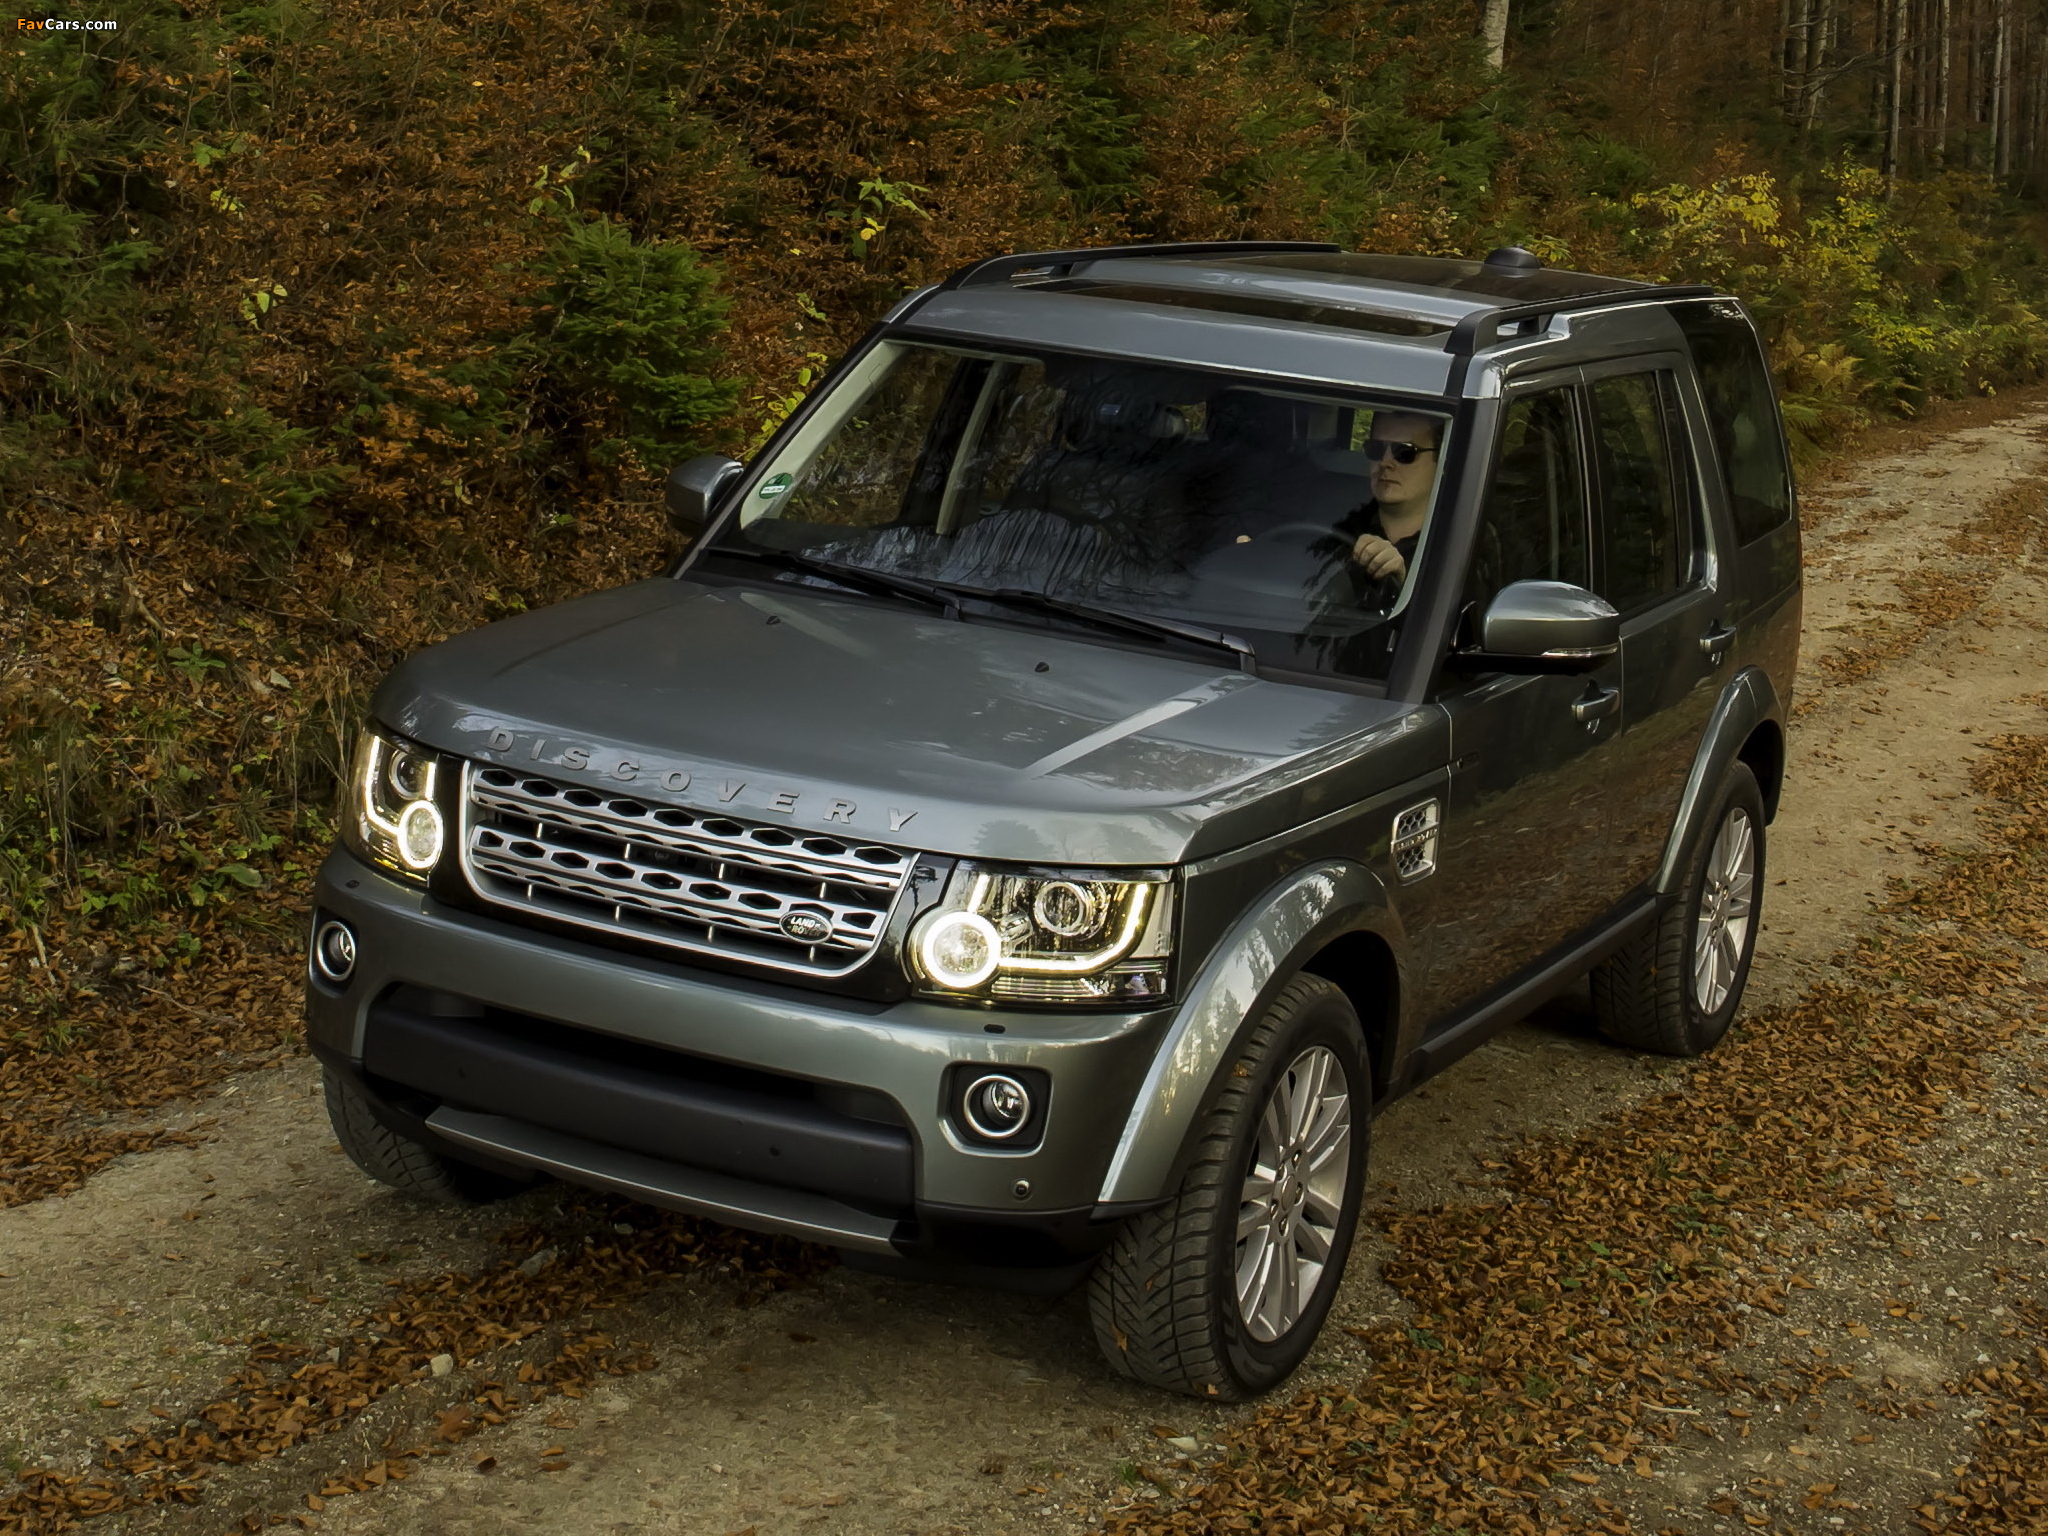 Land Rover Discovery 4 SCV6 HSE 2013 photos (2048x1536)